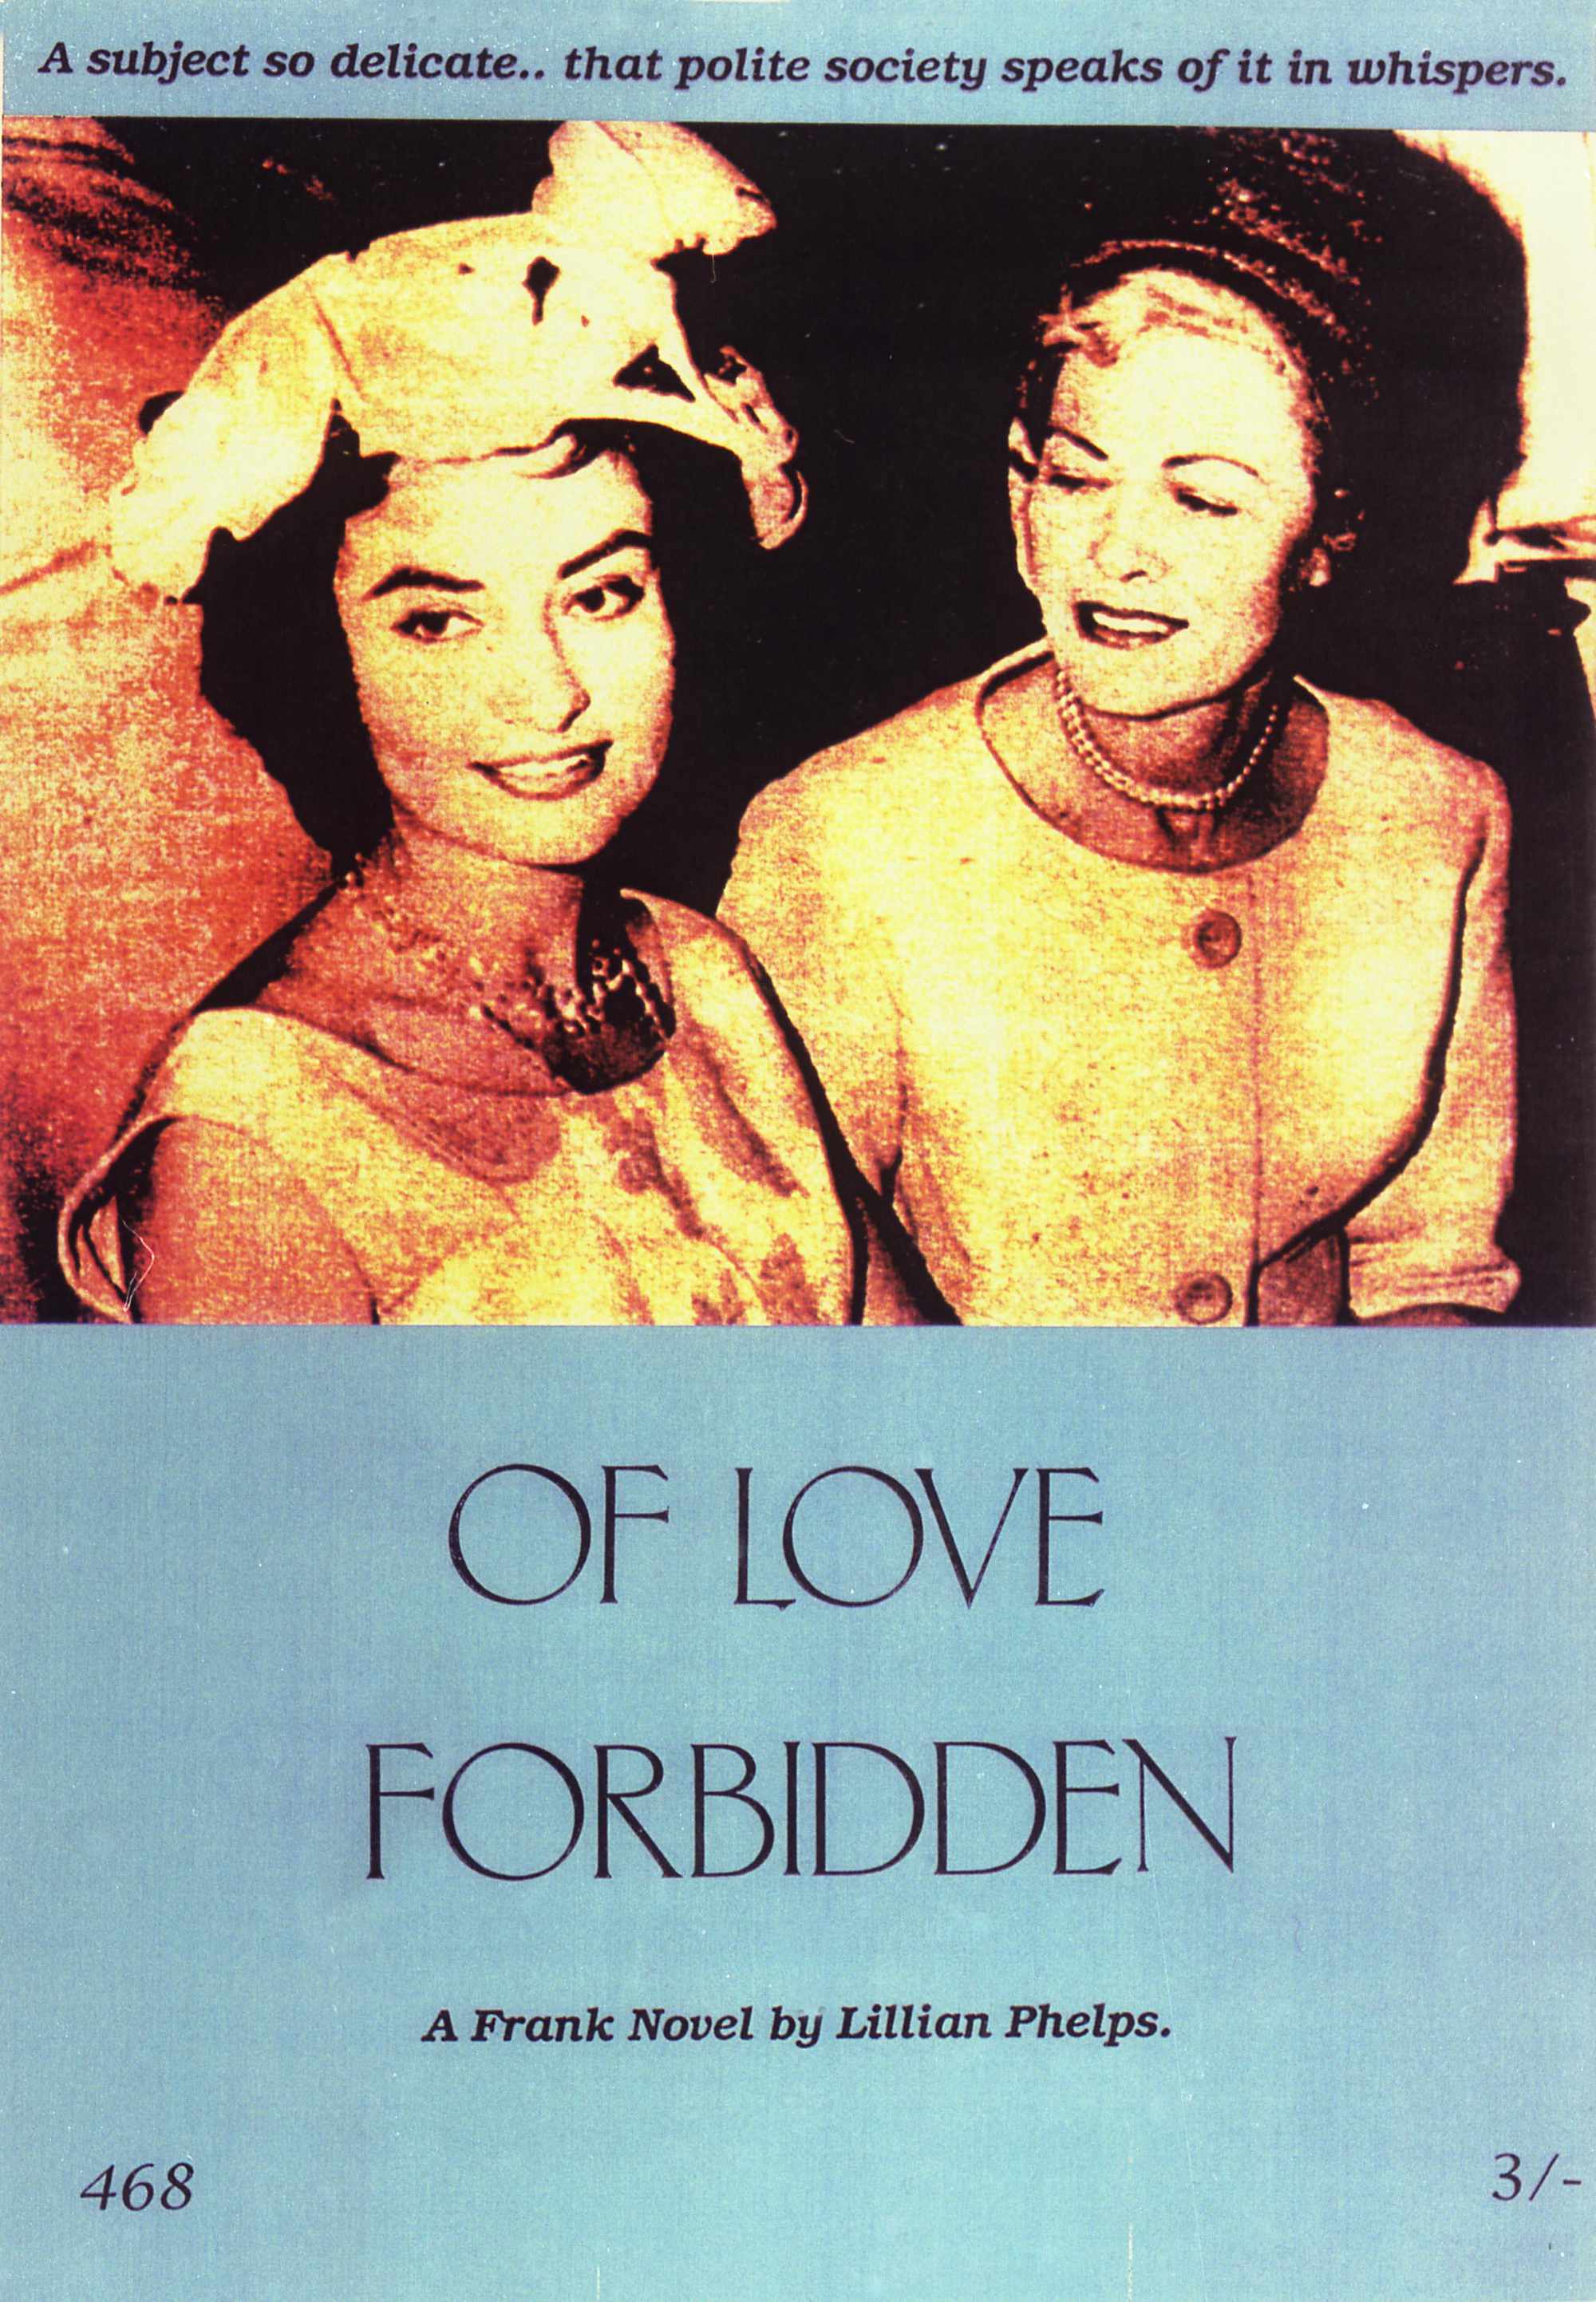 Of Love Forbidden - Type C Mural Print - 1000 x 1350mm